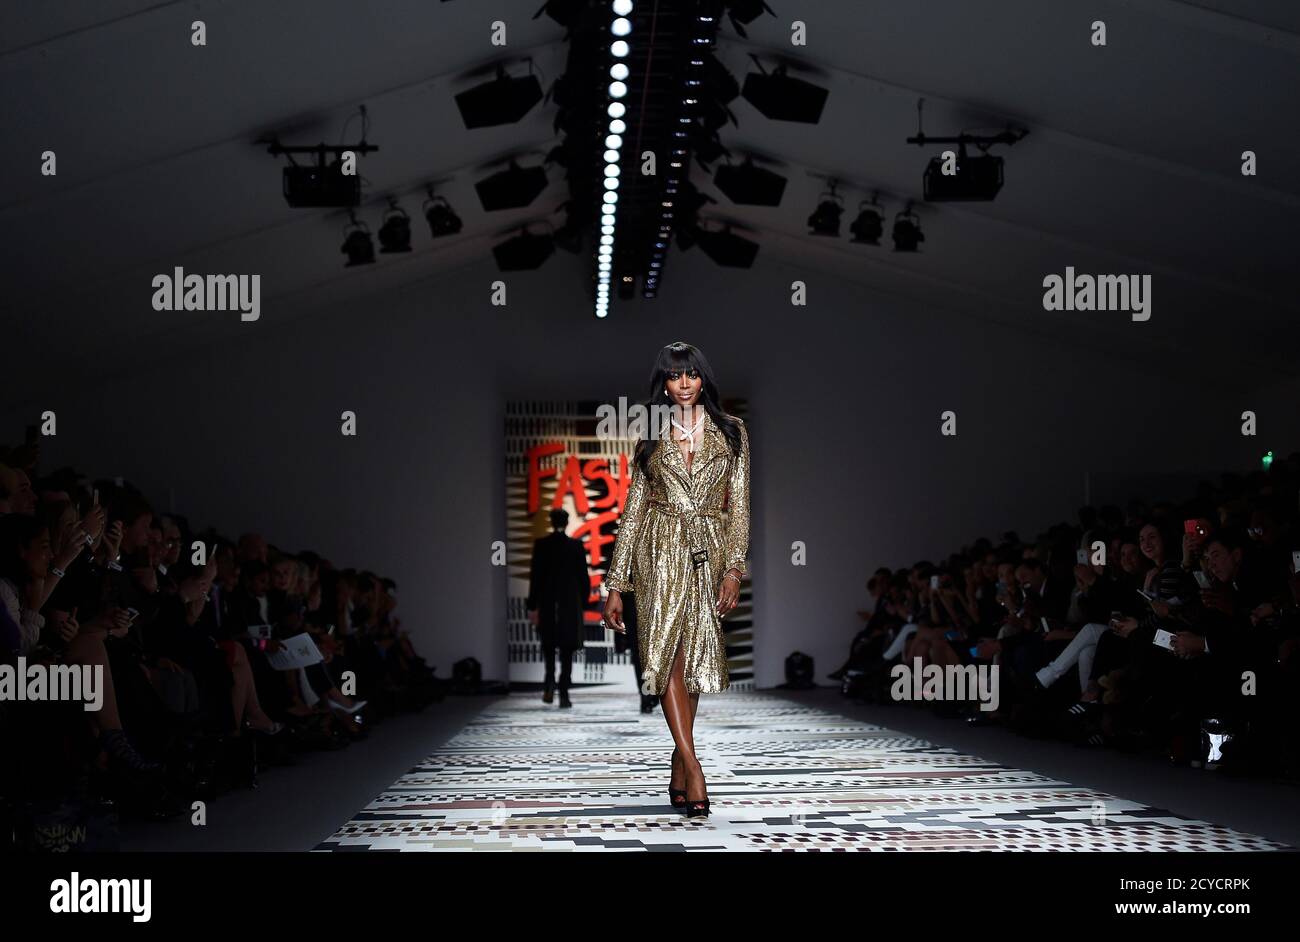 Naomi Campbell Catwalk Banque d'image et photos - Page 5 - Alamy